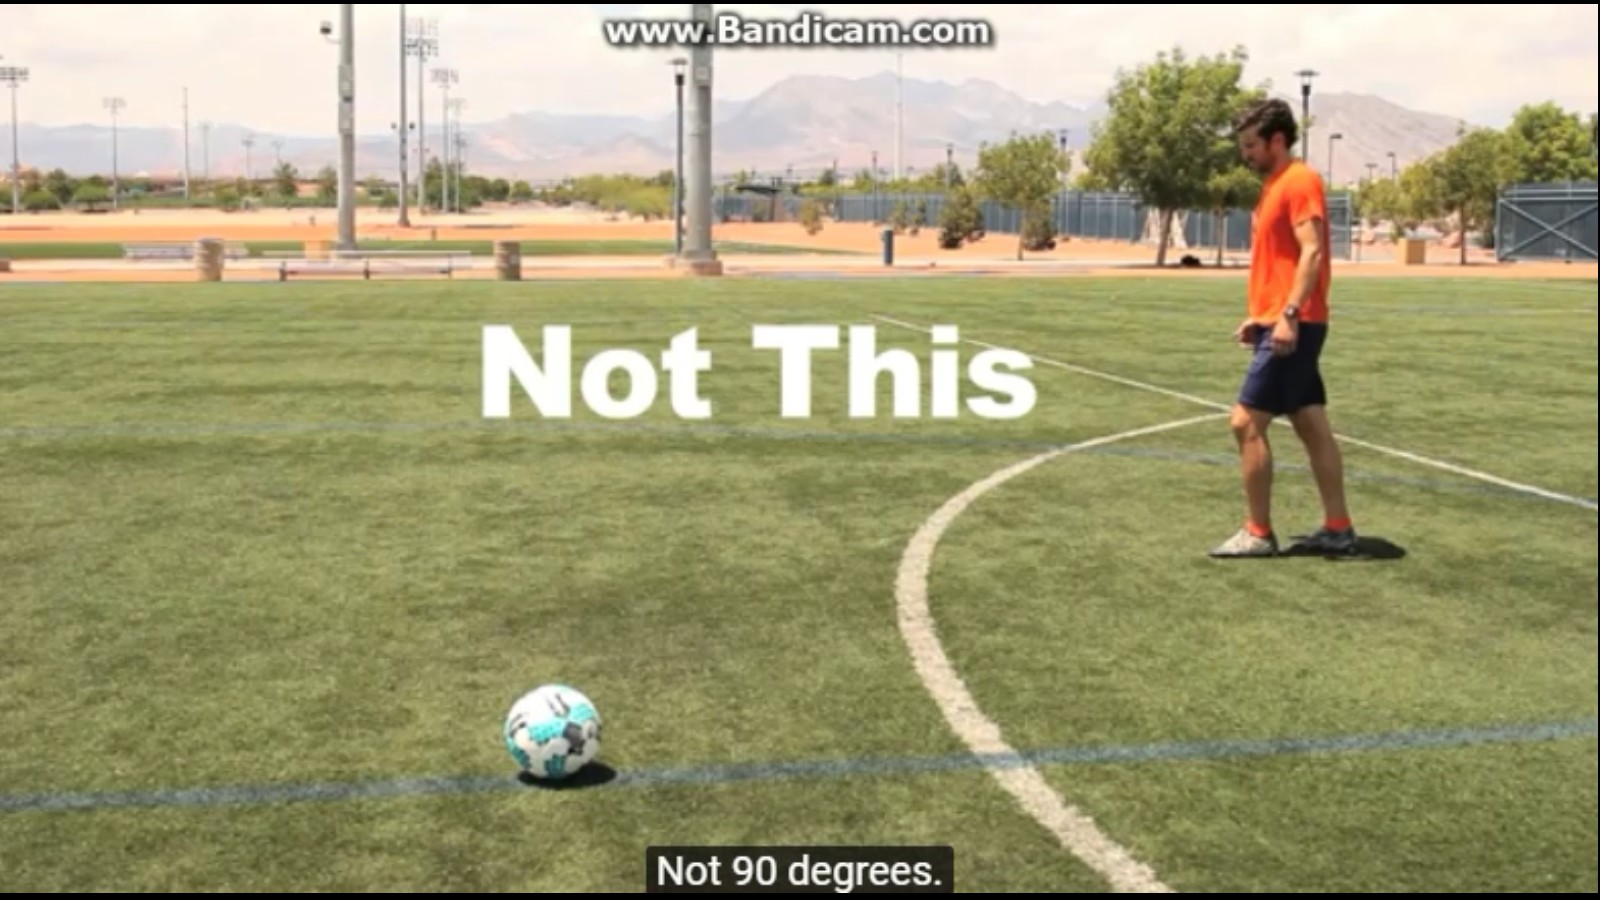 足球教学:如何轻松踢出弧线球?